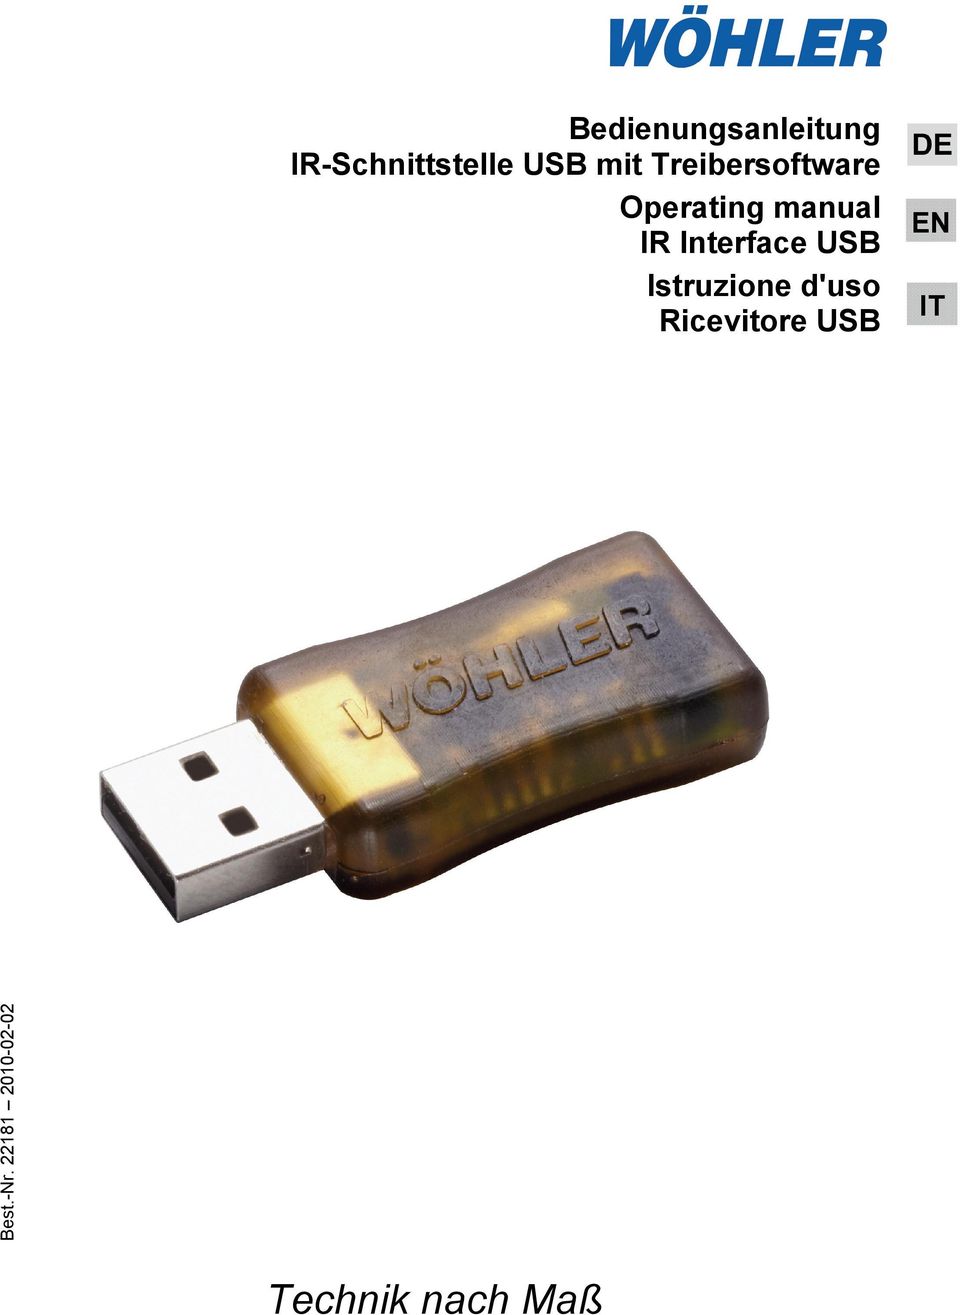 Interface USB Istruzione d'uso Ricevitore